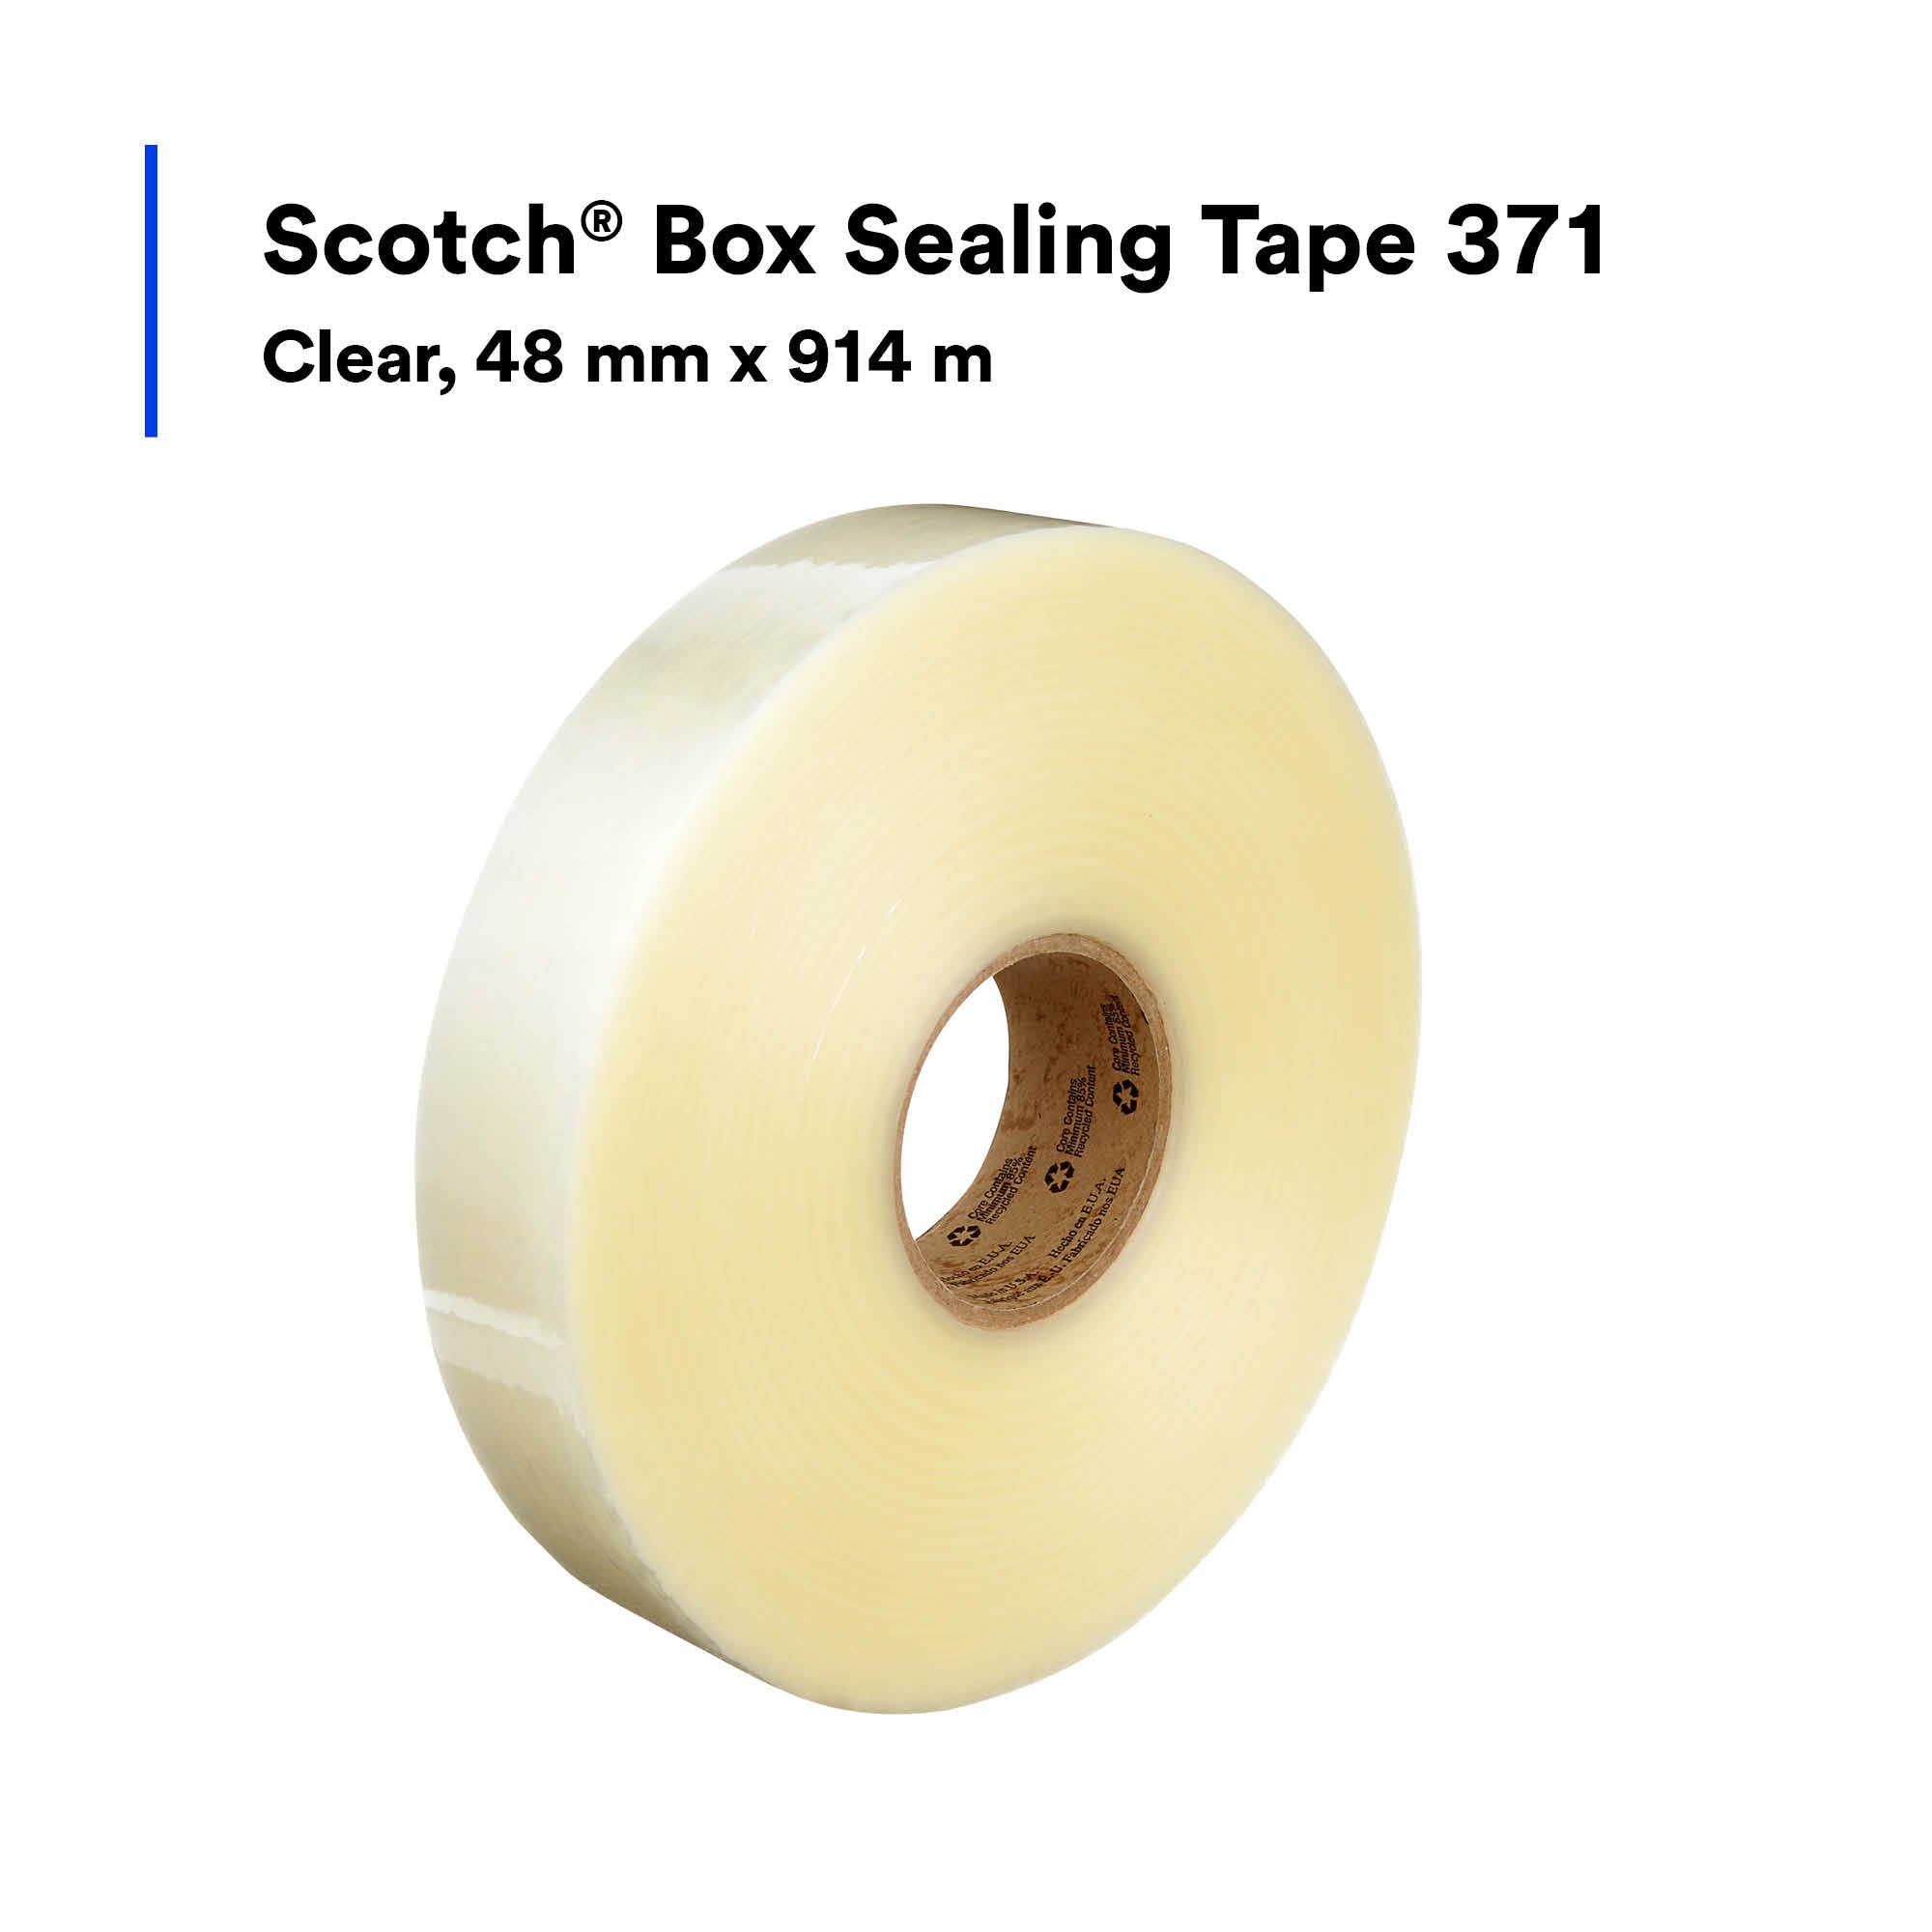 Scotch Box Sealing Tape 371, Clear, 48 mm x 914 m, 6/Case